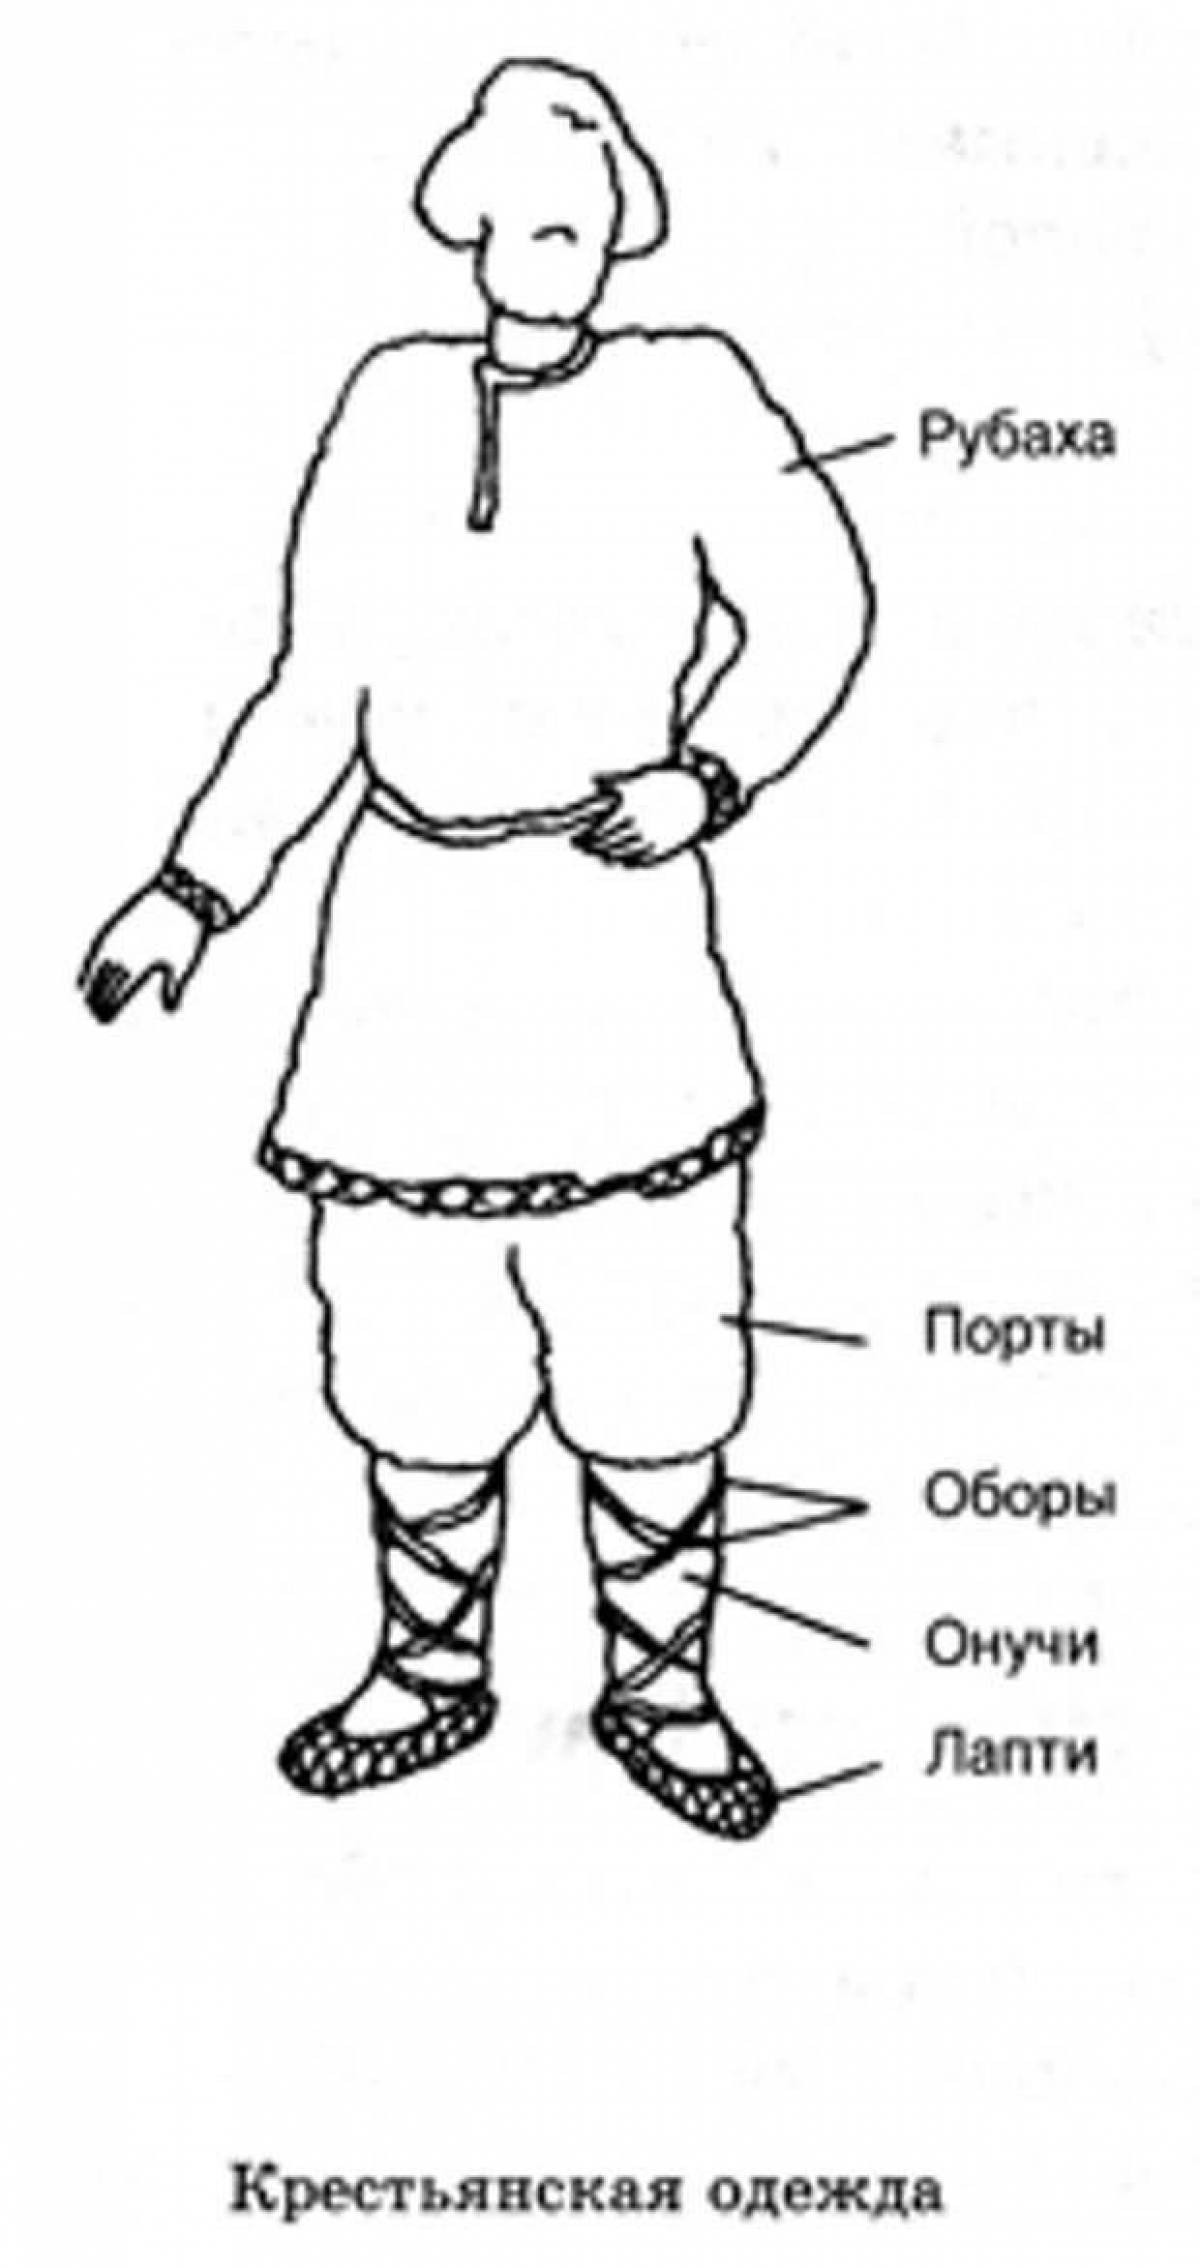 Рисунок одежды крестьянина древней Руси